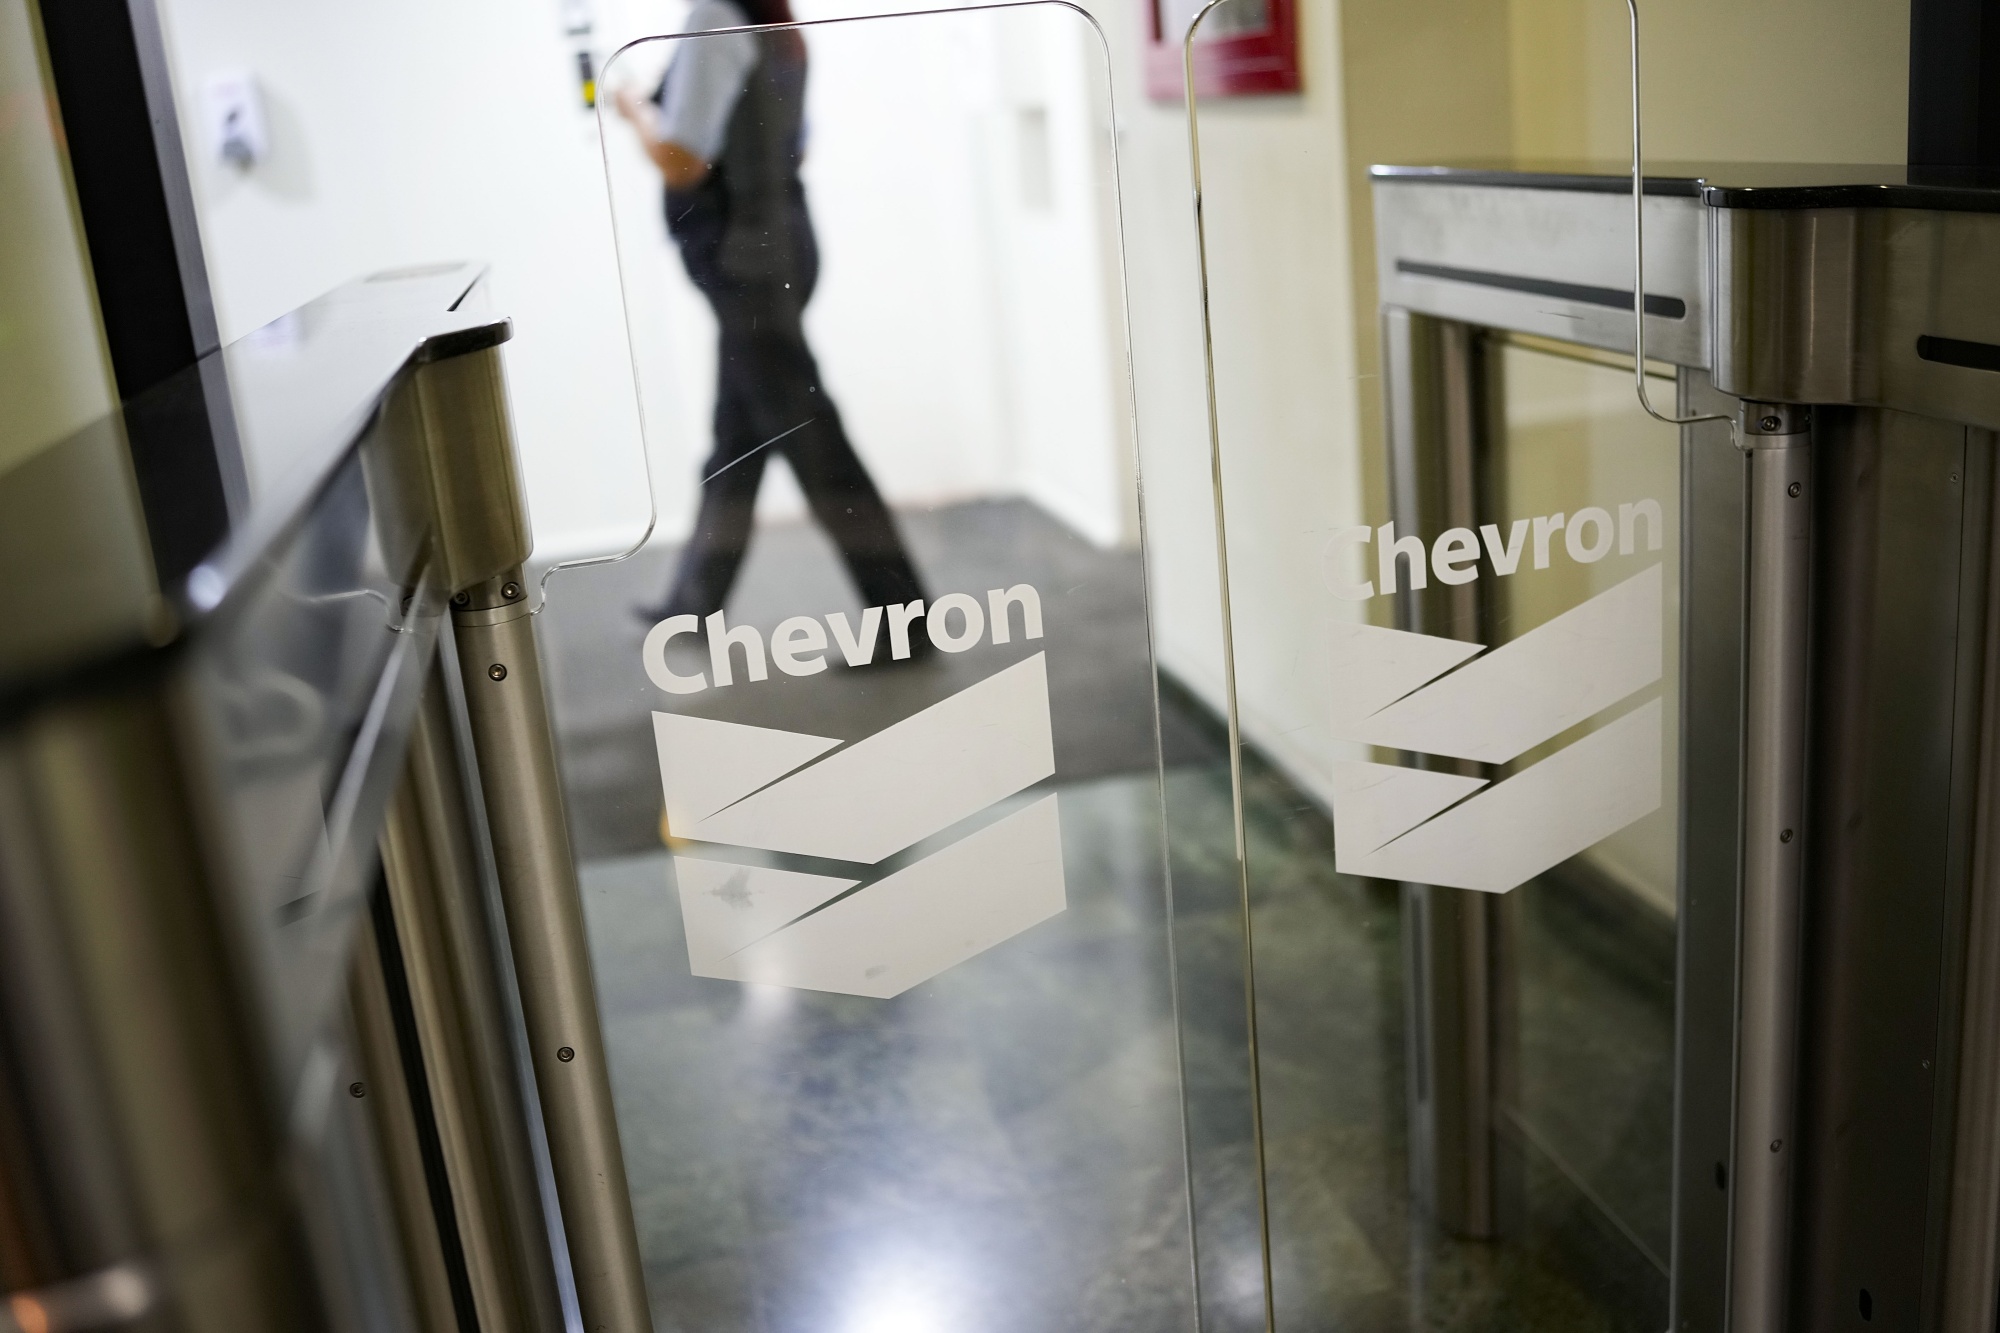 The Chevron Corp. offices in Caracas, Venezuela.